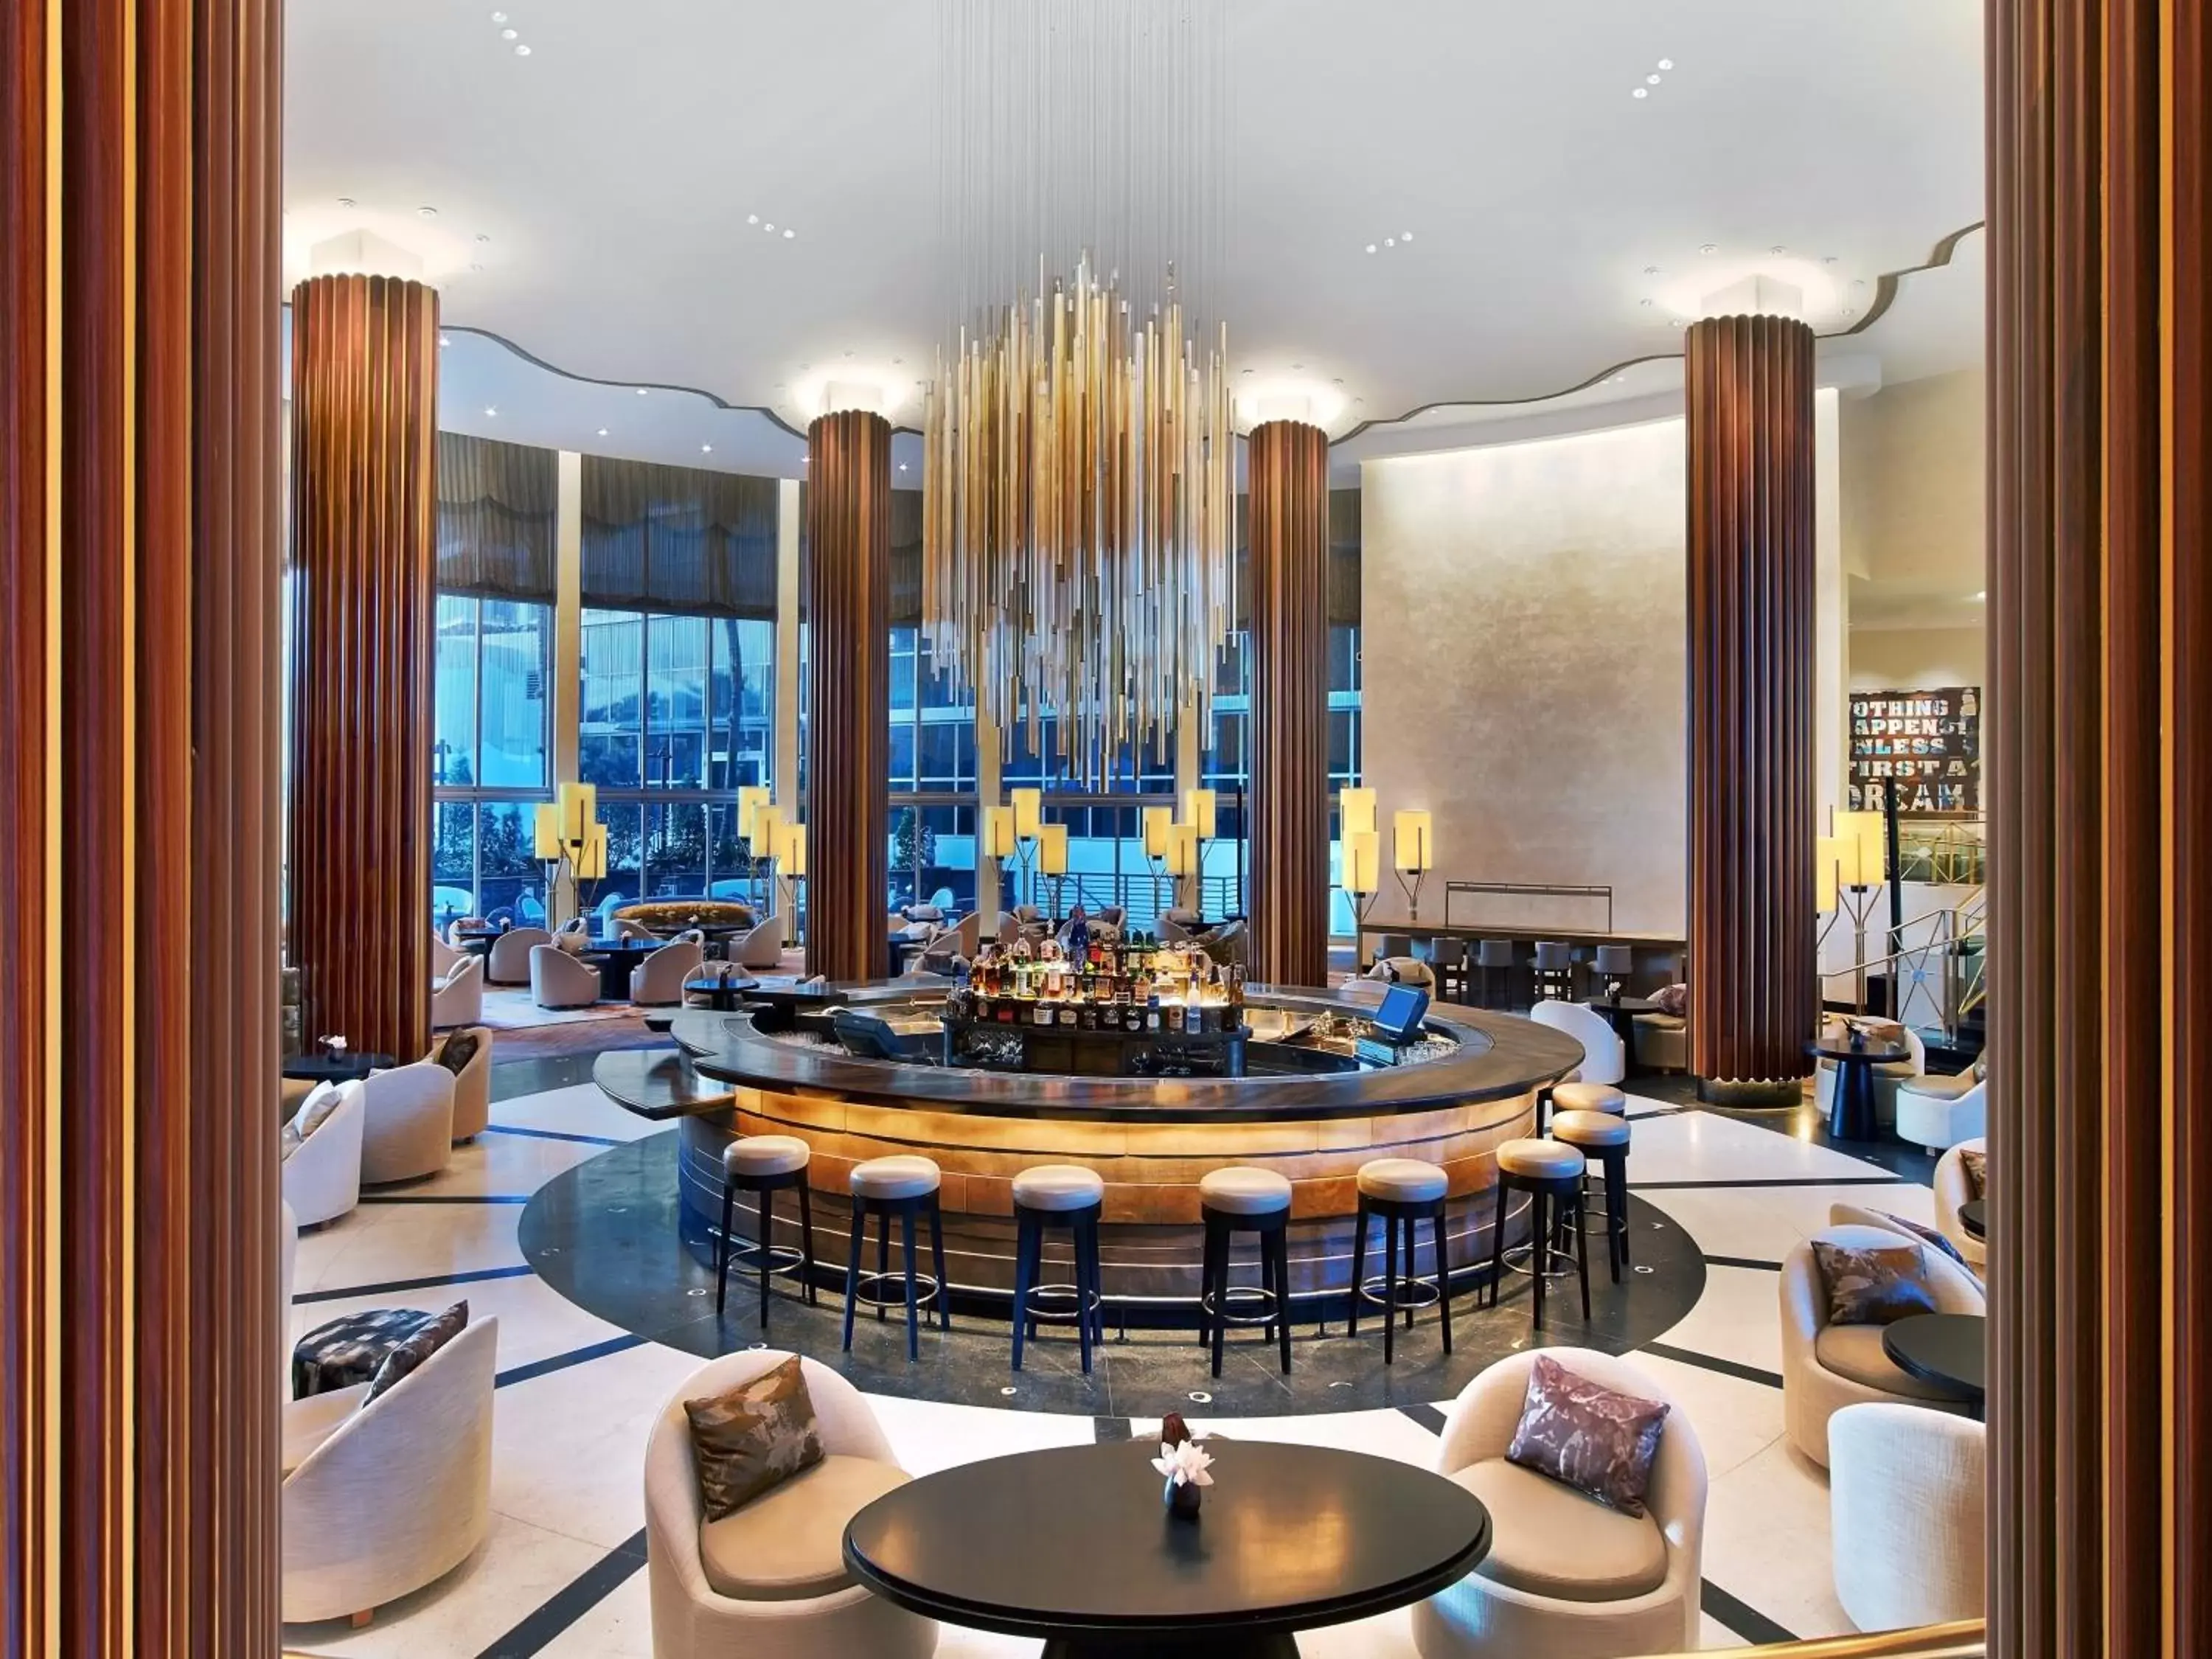 Lobby or reception in Nobu Hotel Miami Beach